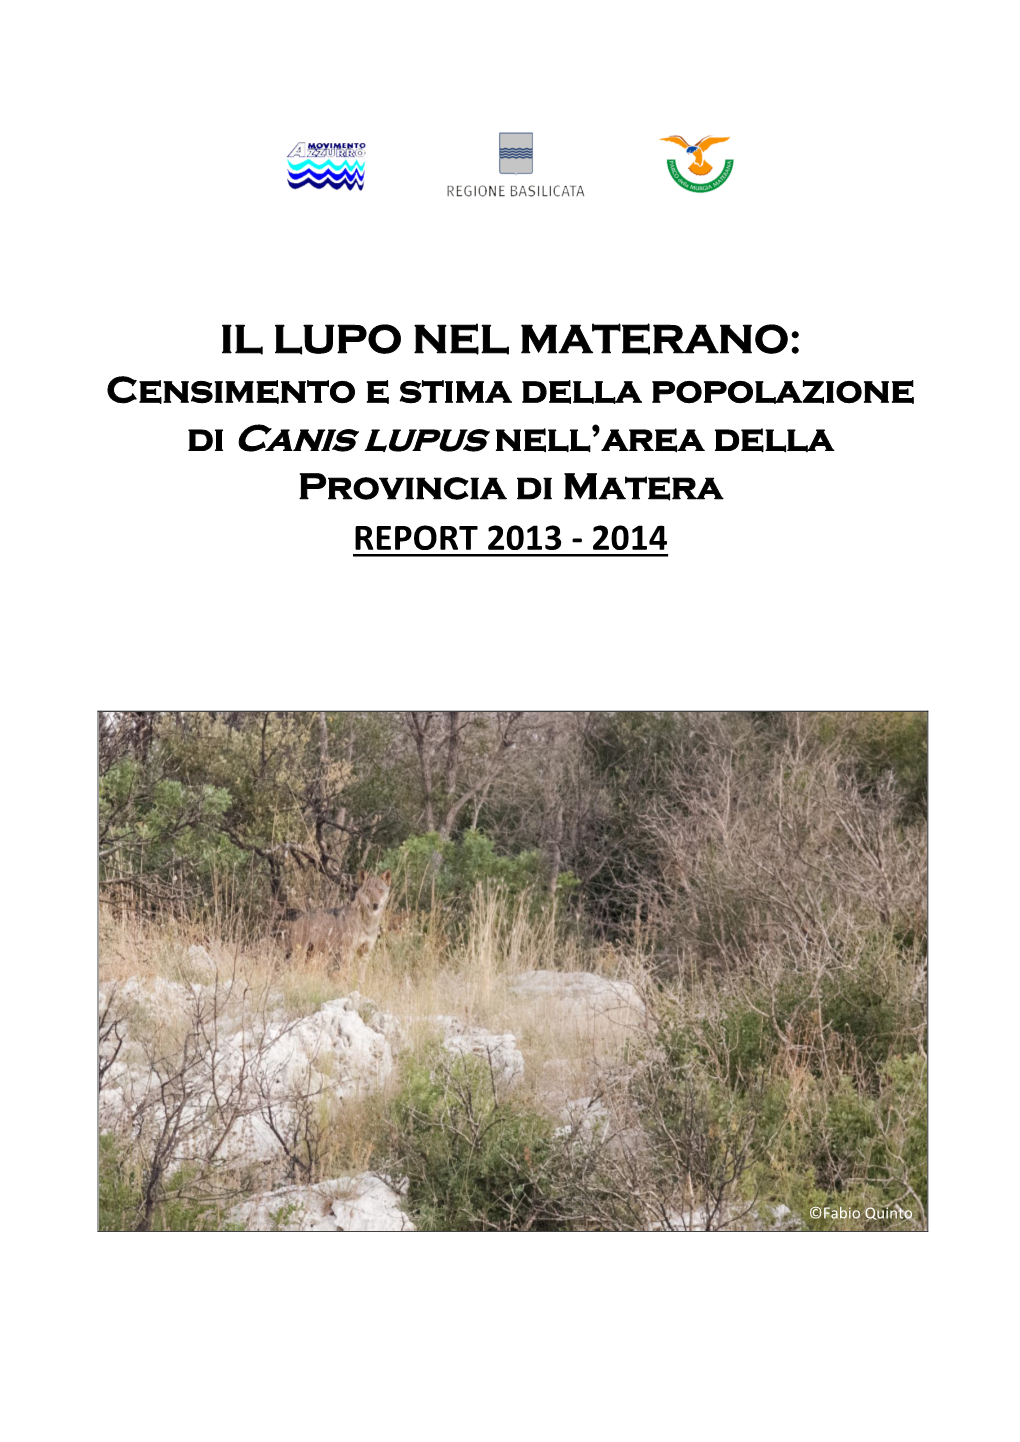 IL LUPO NEL MATERANO: Censimento E Stima Della Popolazione Di Canis Lupus Nell’Area Della Provincia Di Matera REPORT 2013 - 2014